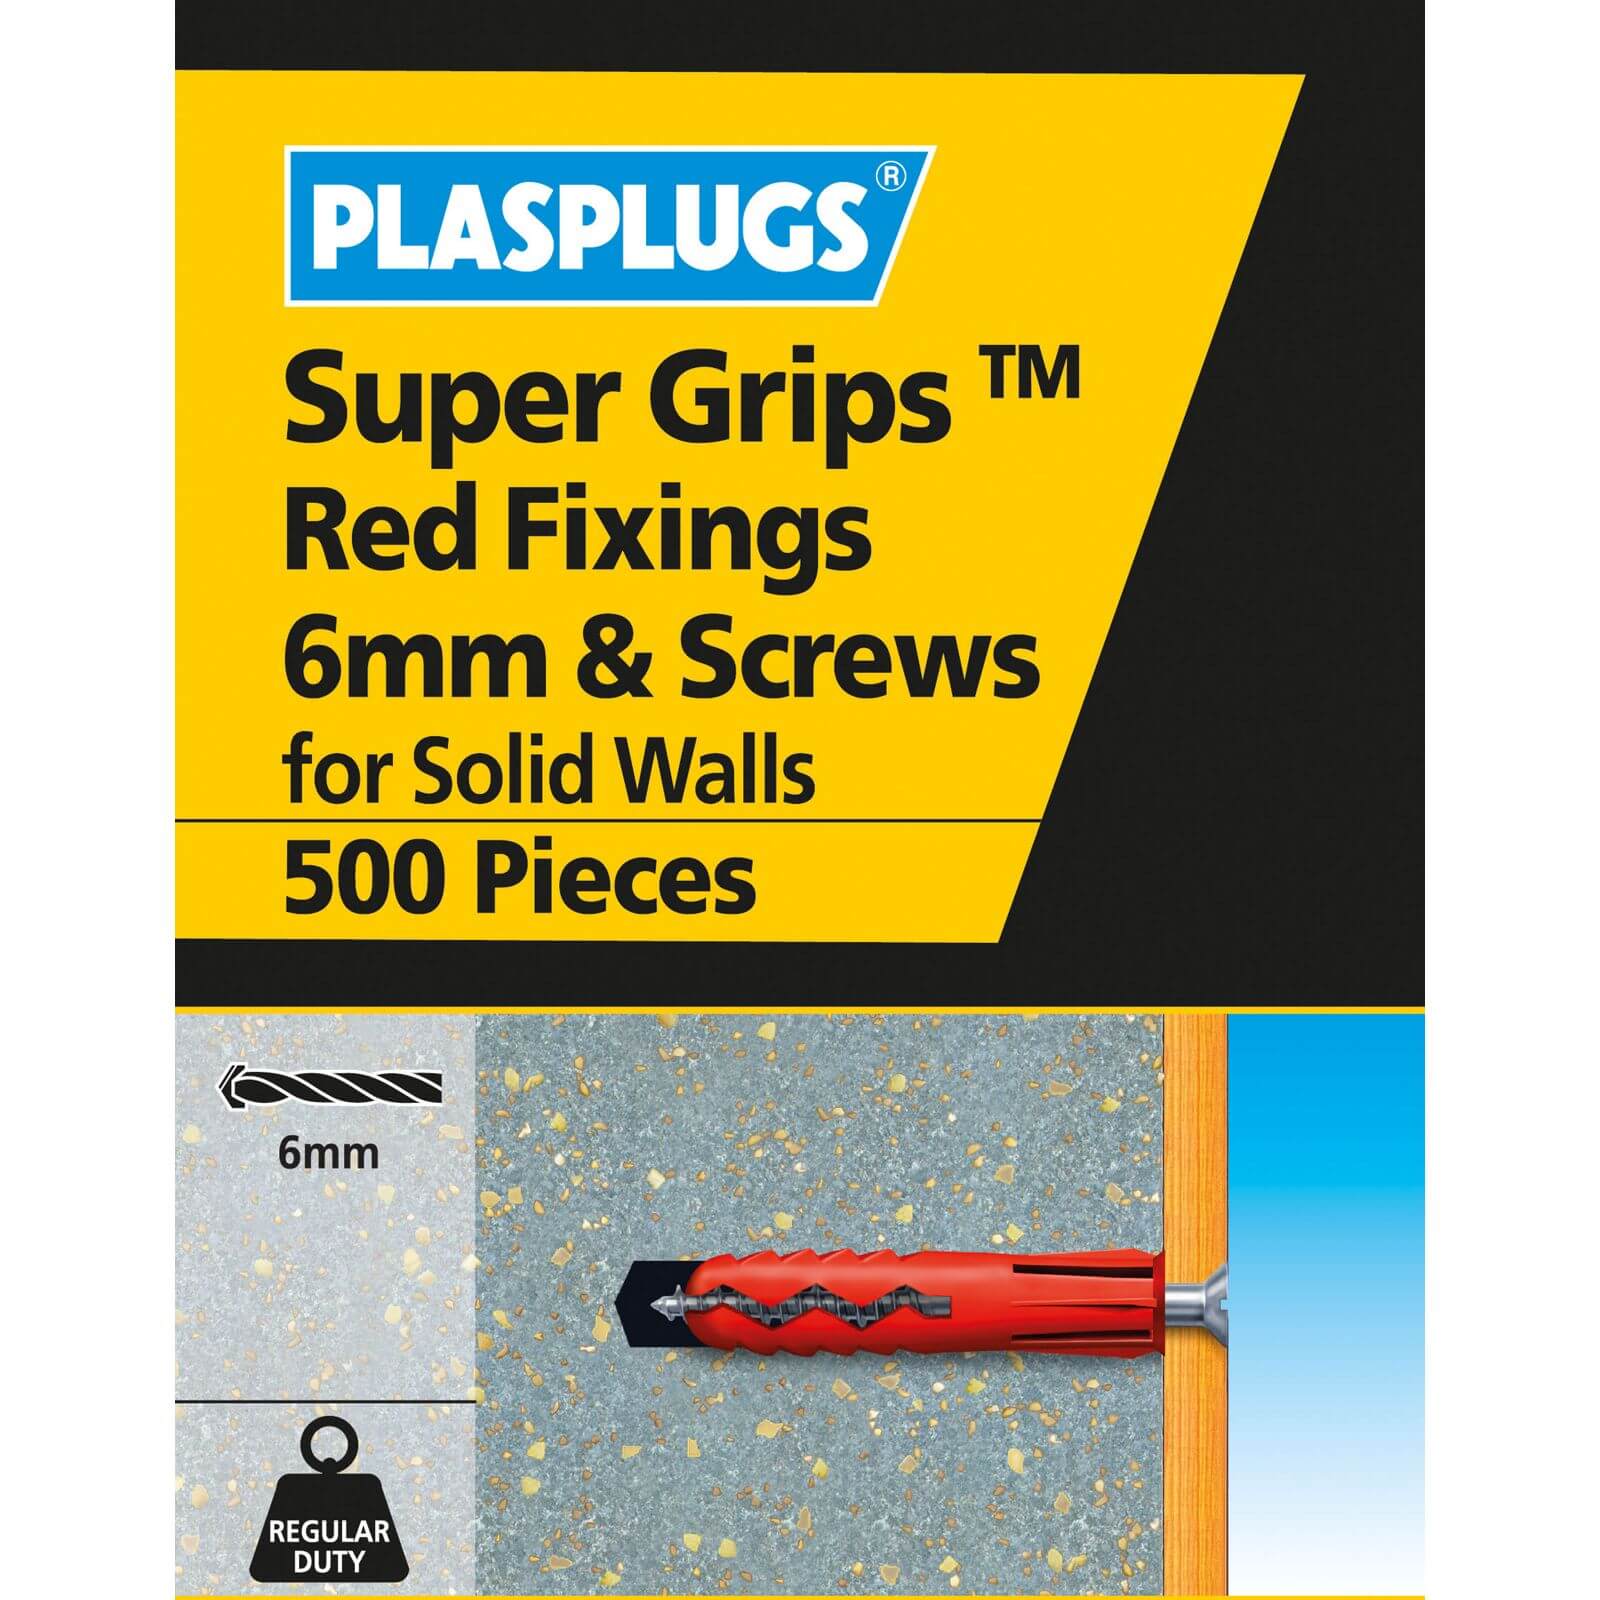 6mm Sgrips Red Fixings & Screws 500 Pk